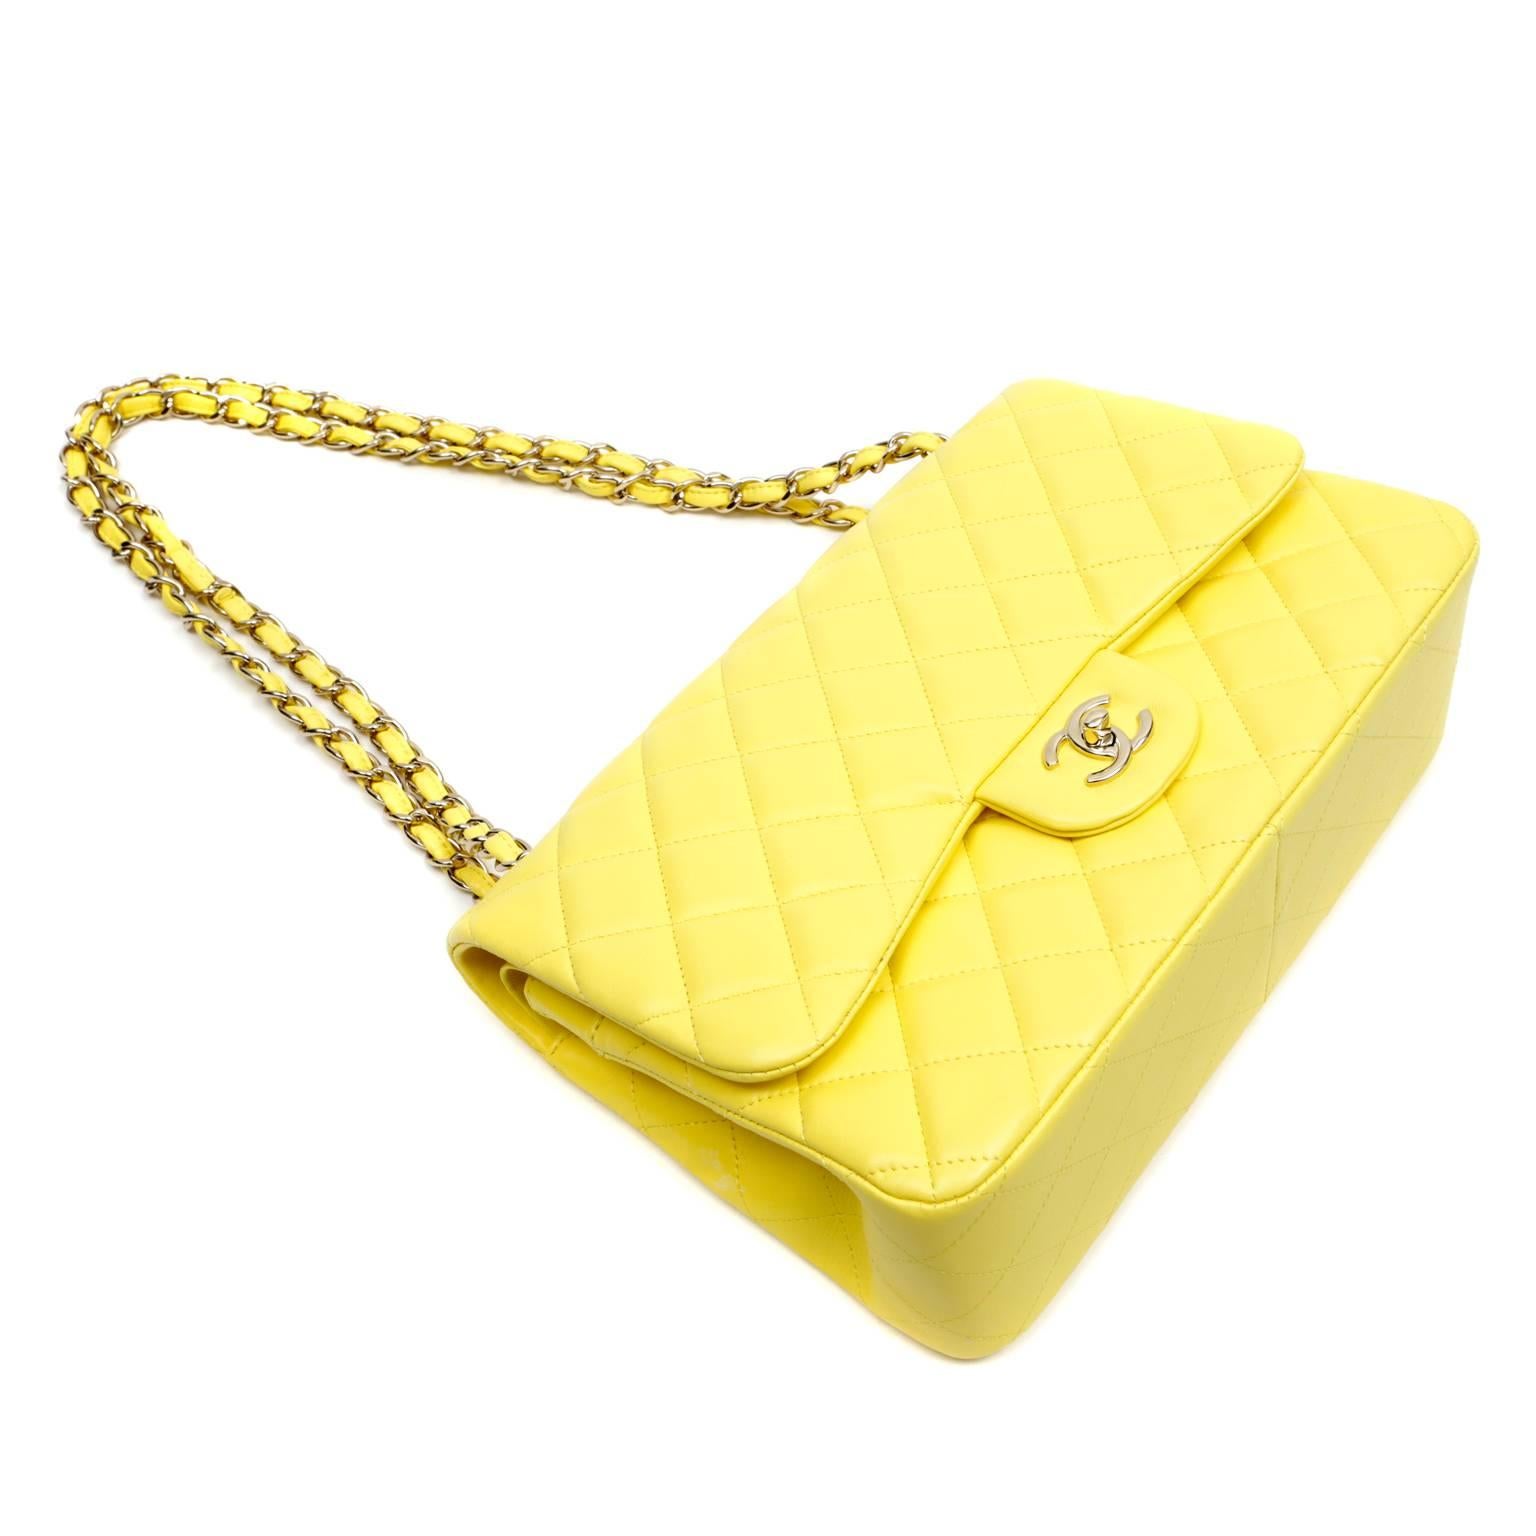 Women's Chanel Yellow Leather Jumbo Classic Double Flap Bag